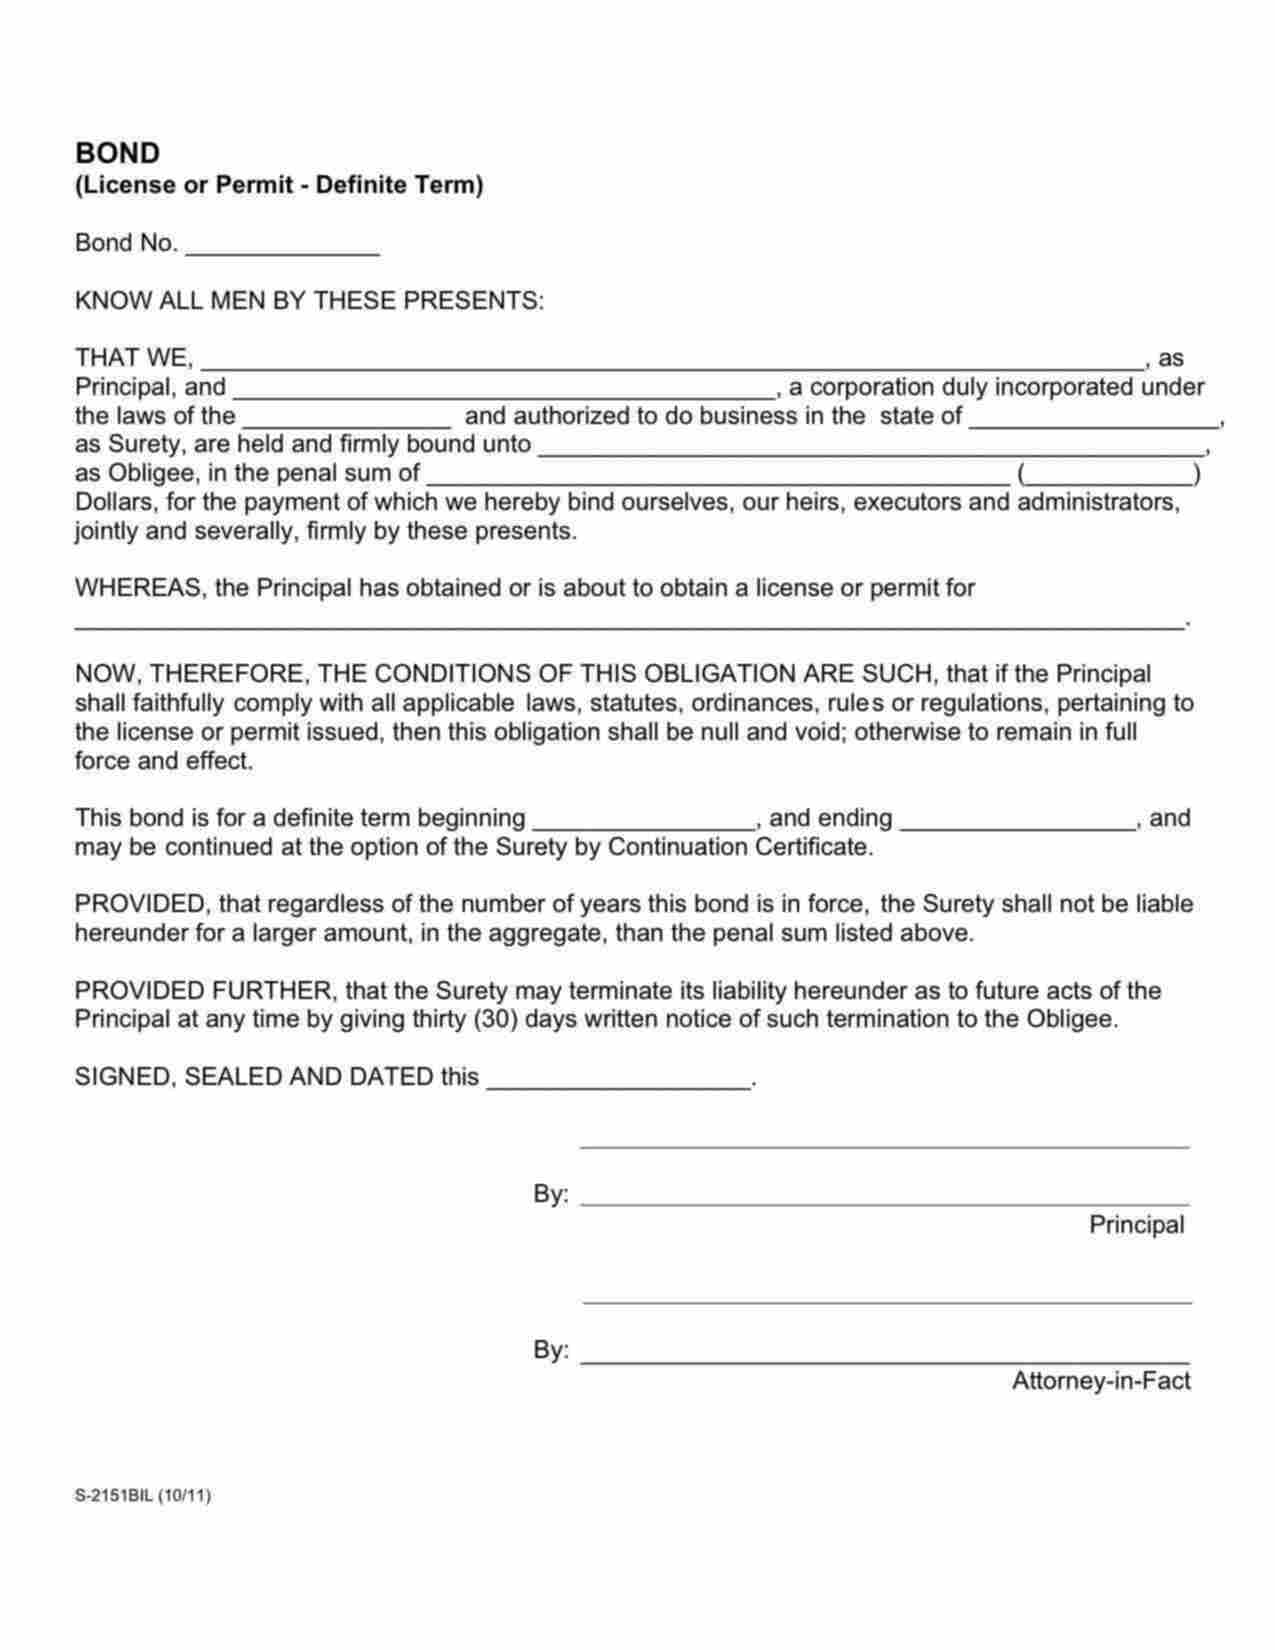 Idaho Private Patrol Agent/Alarm Installer Bond Form